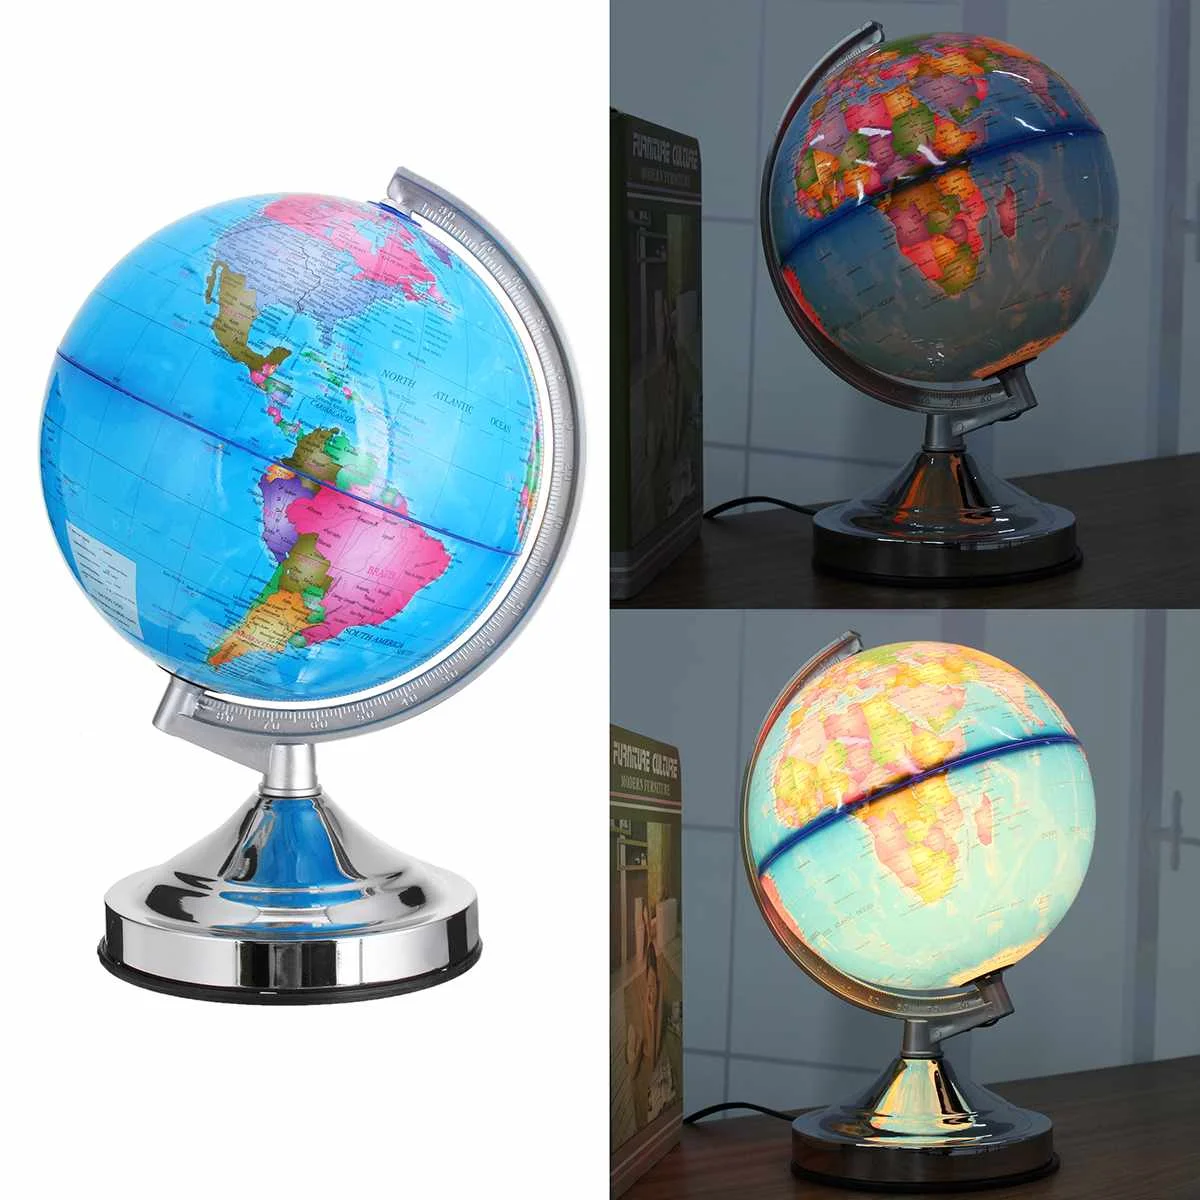 110 В/220 В ЕС/США штекер глобус Карта мира с светом 3 яркий Отрегулируйте светодиодный для дома или офиса, декоративные земли, география образовательные принадлежности